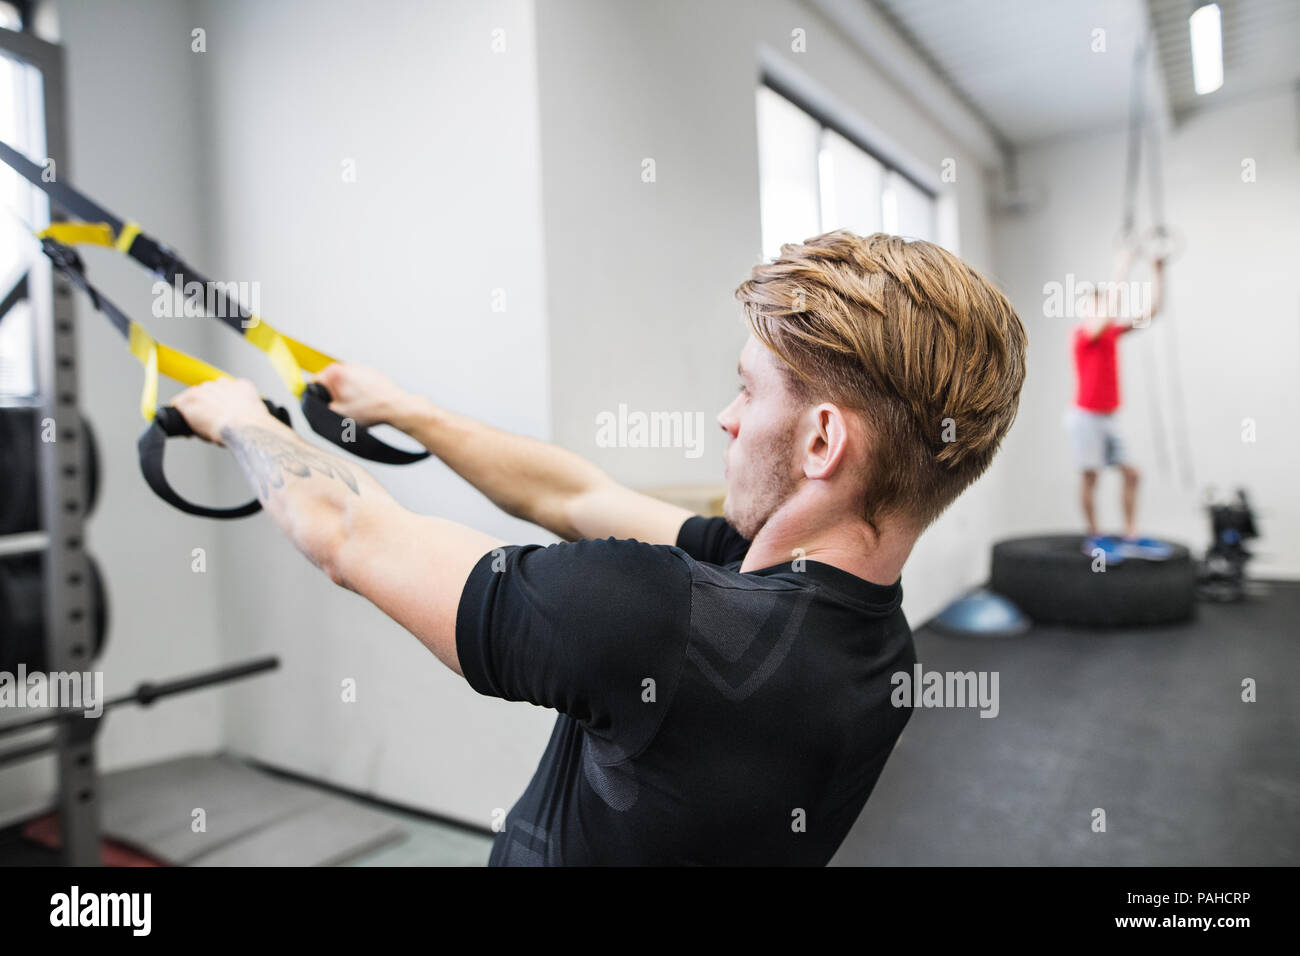 Passen junge Mann im Fitnessstudio arbeiten mit Federung Trägern. Stockfoto